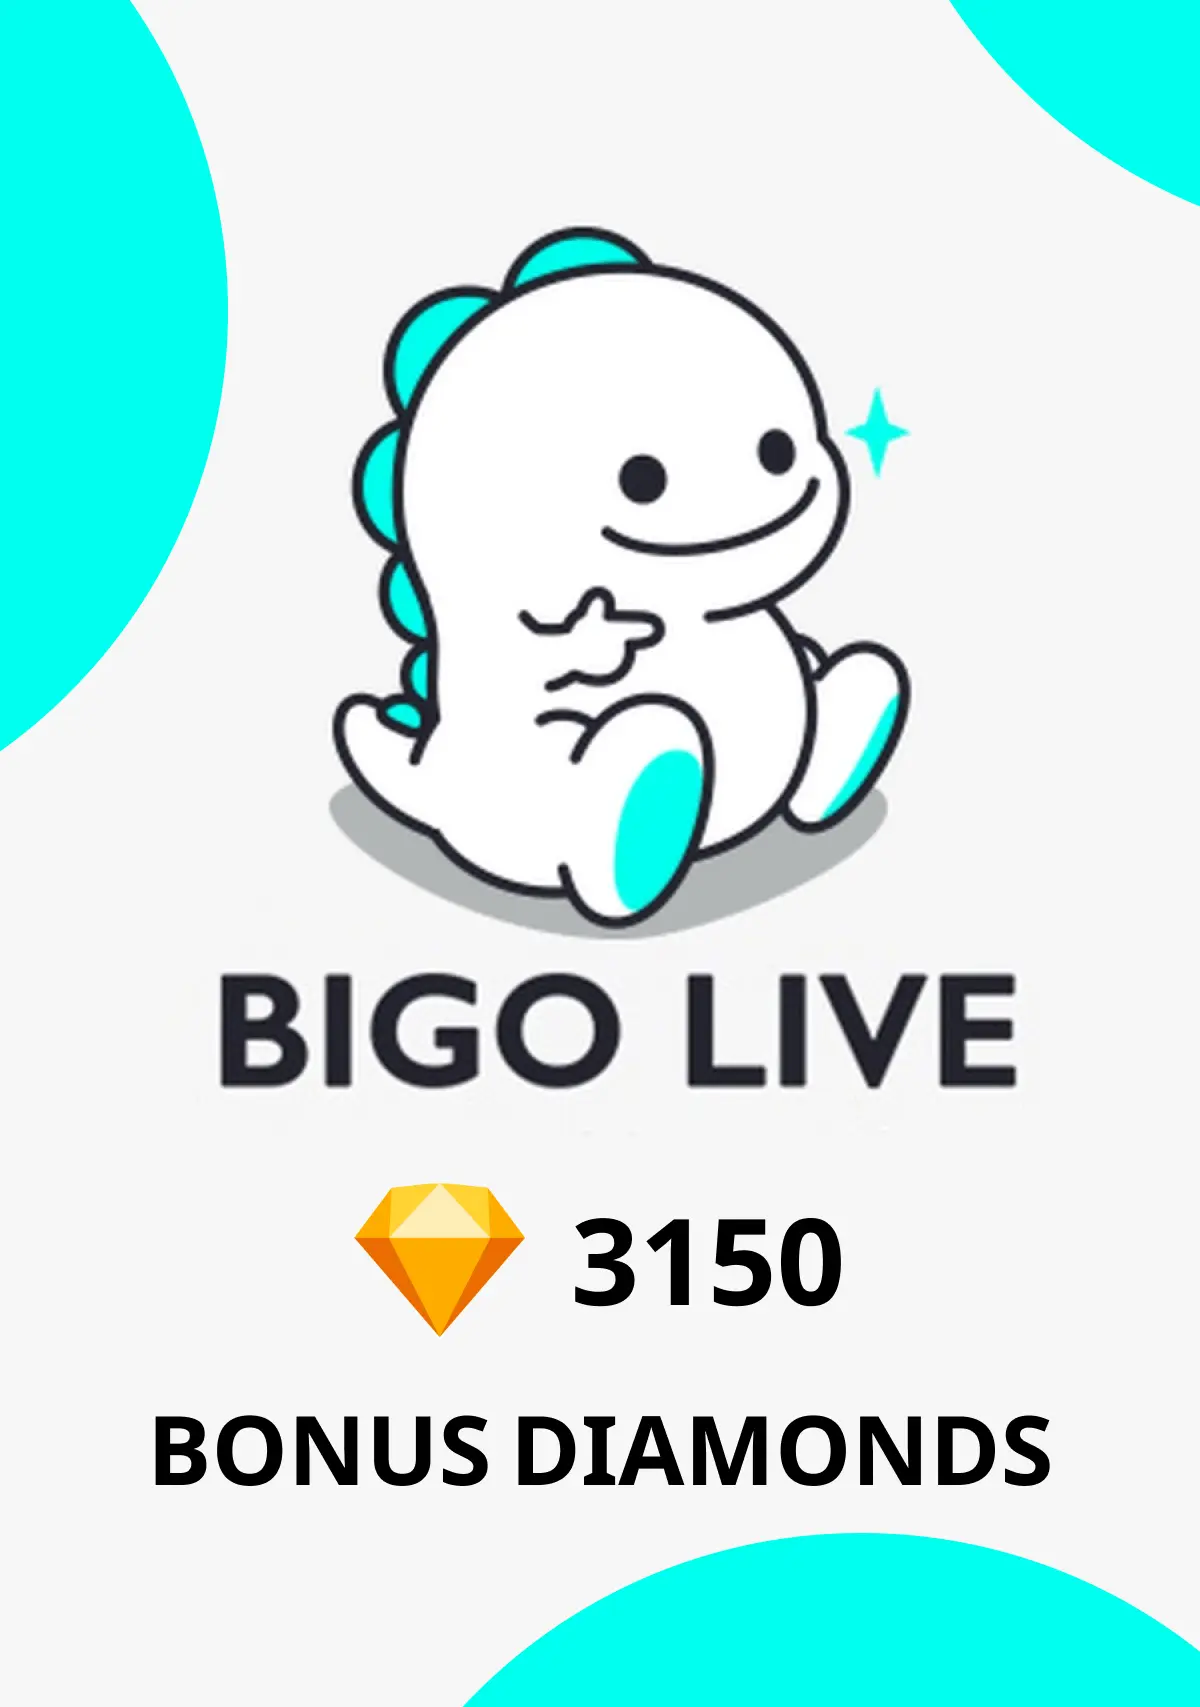 Bigo Live - 3150 Bonus Diamonds - Digital Code